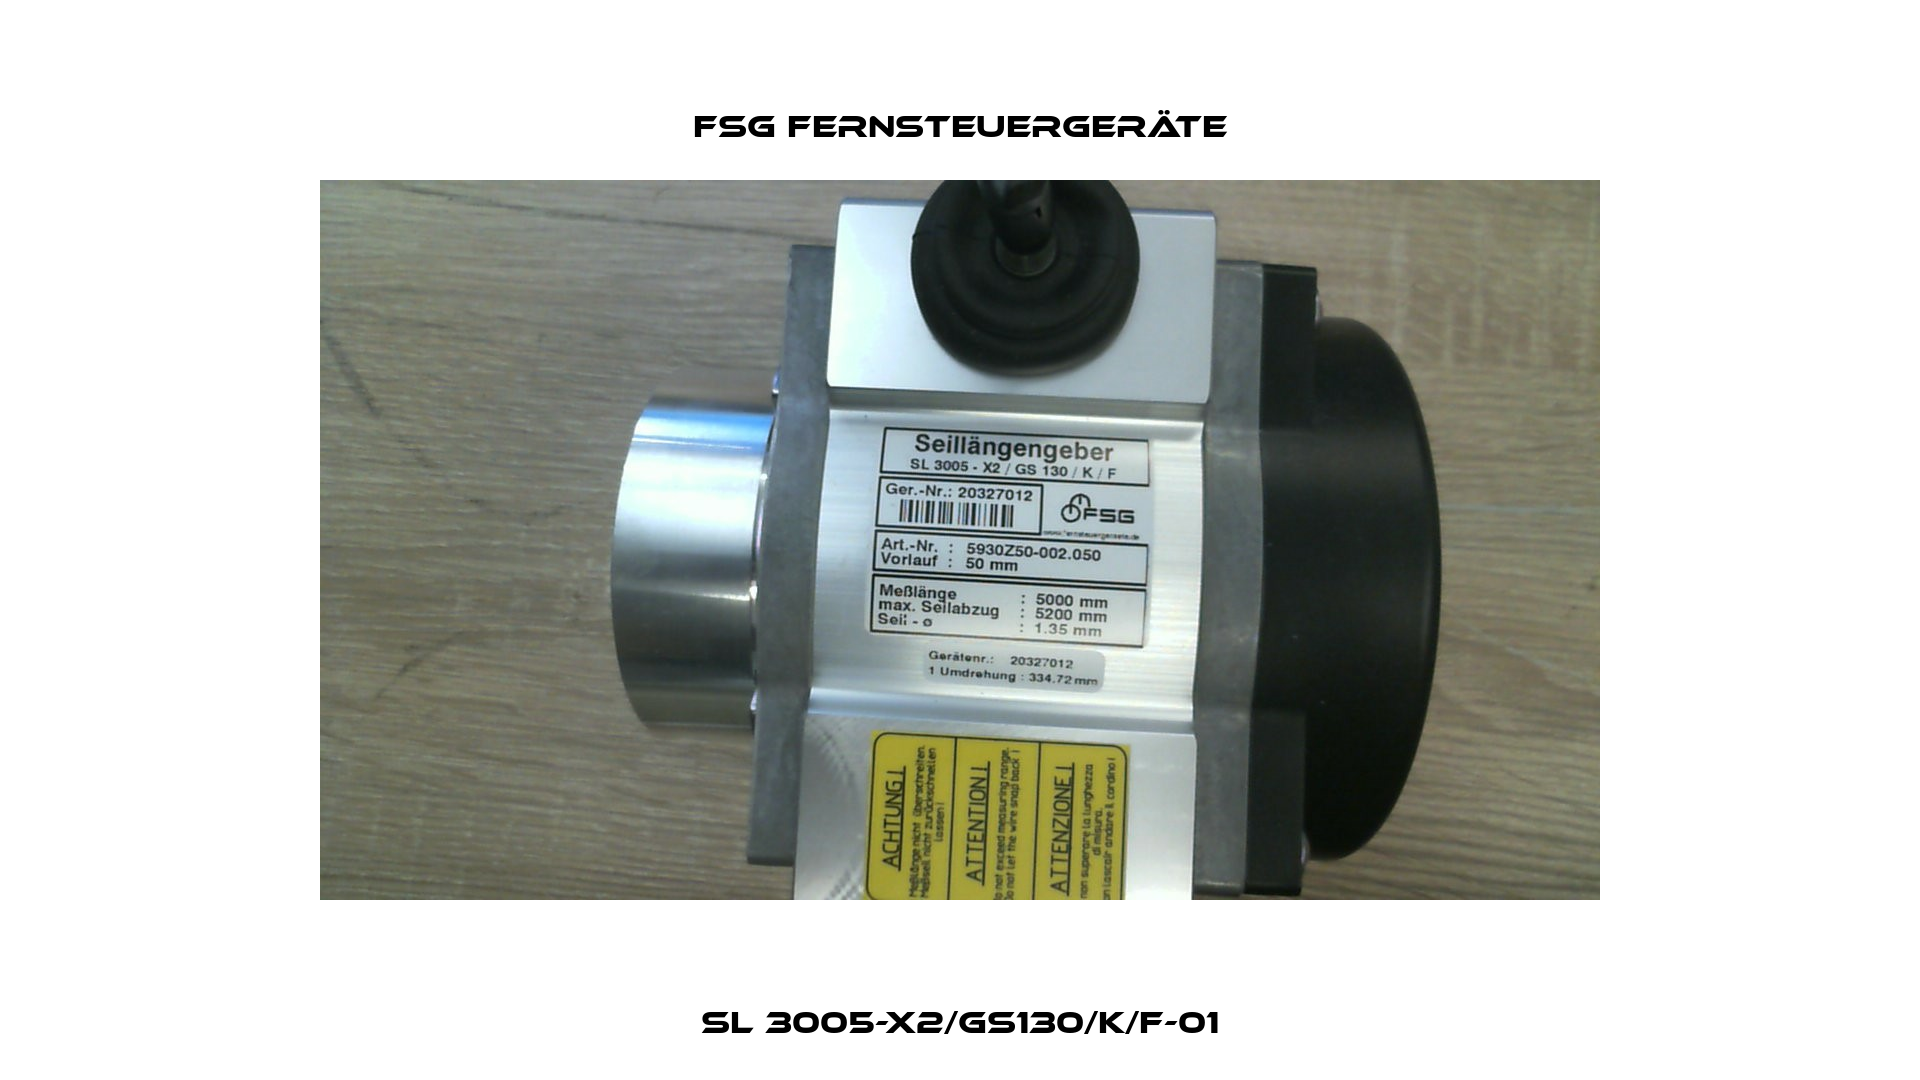 SL 3005-X2/GS130/K/F-01 FSG Fernsteuergeräte